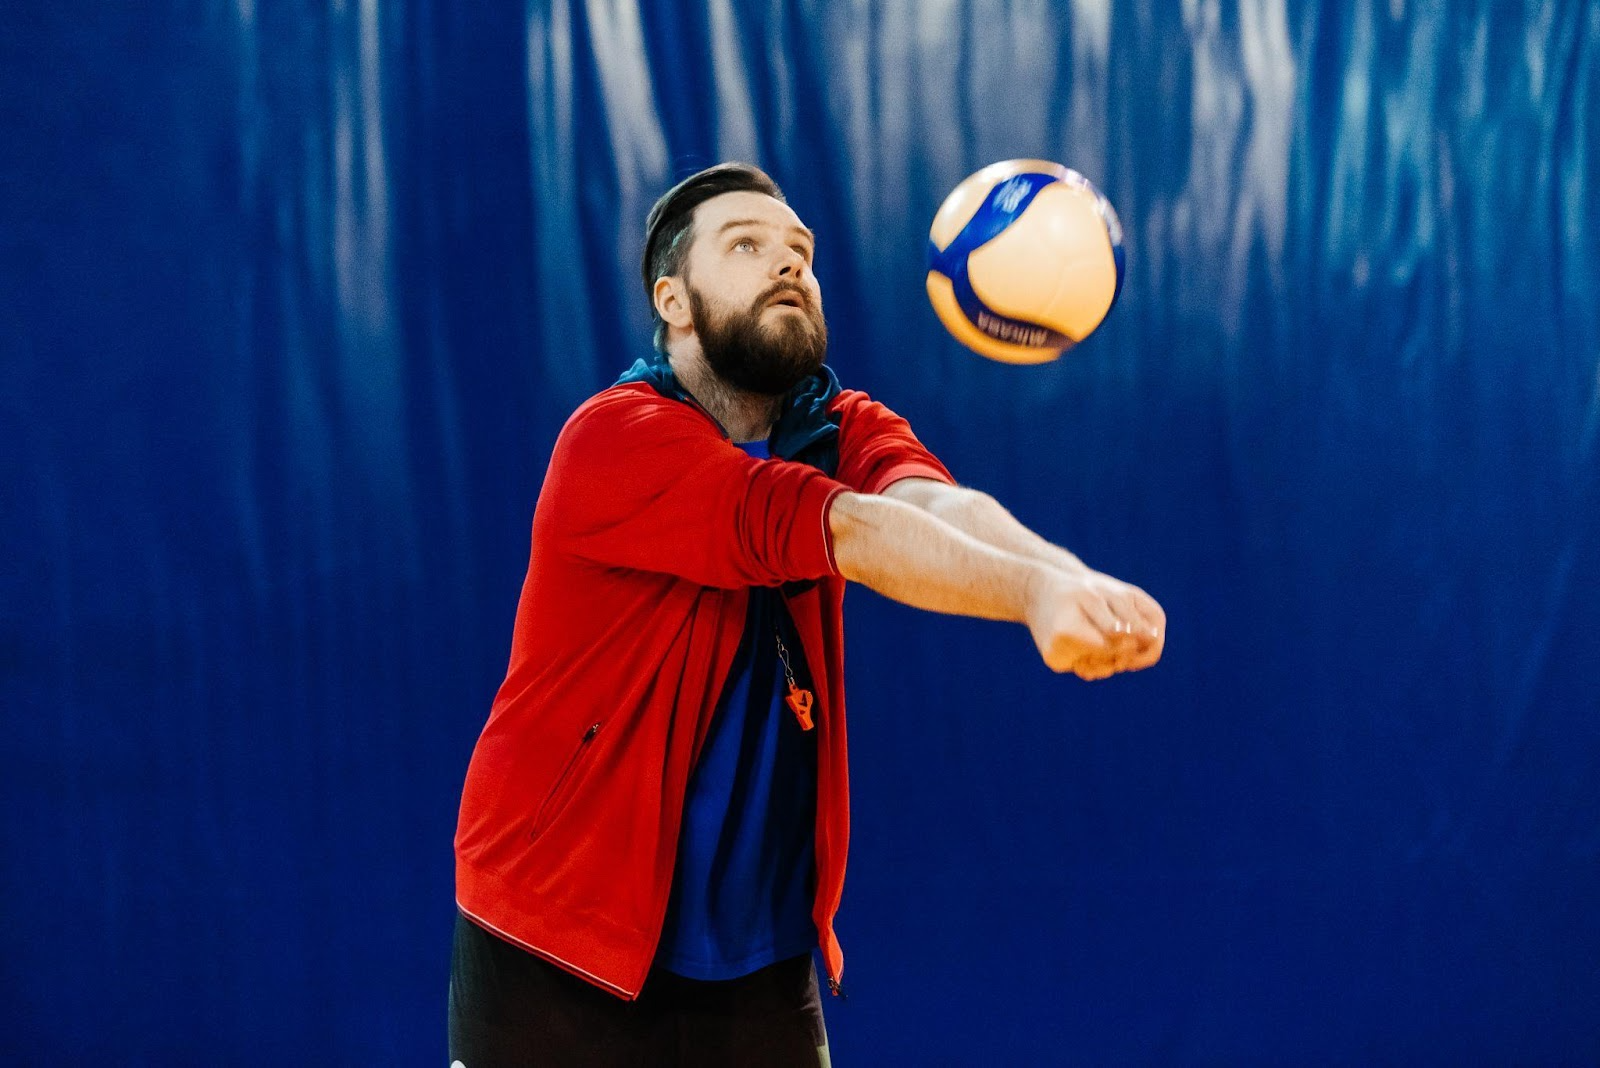 Правильная подача мяча в волейболе. Как подавать планер (техническая подача)